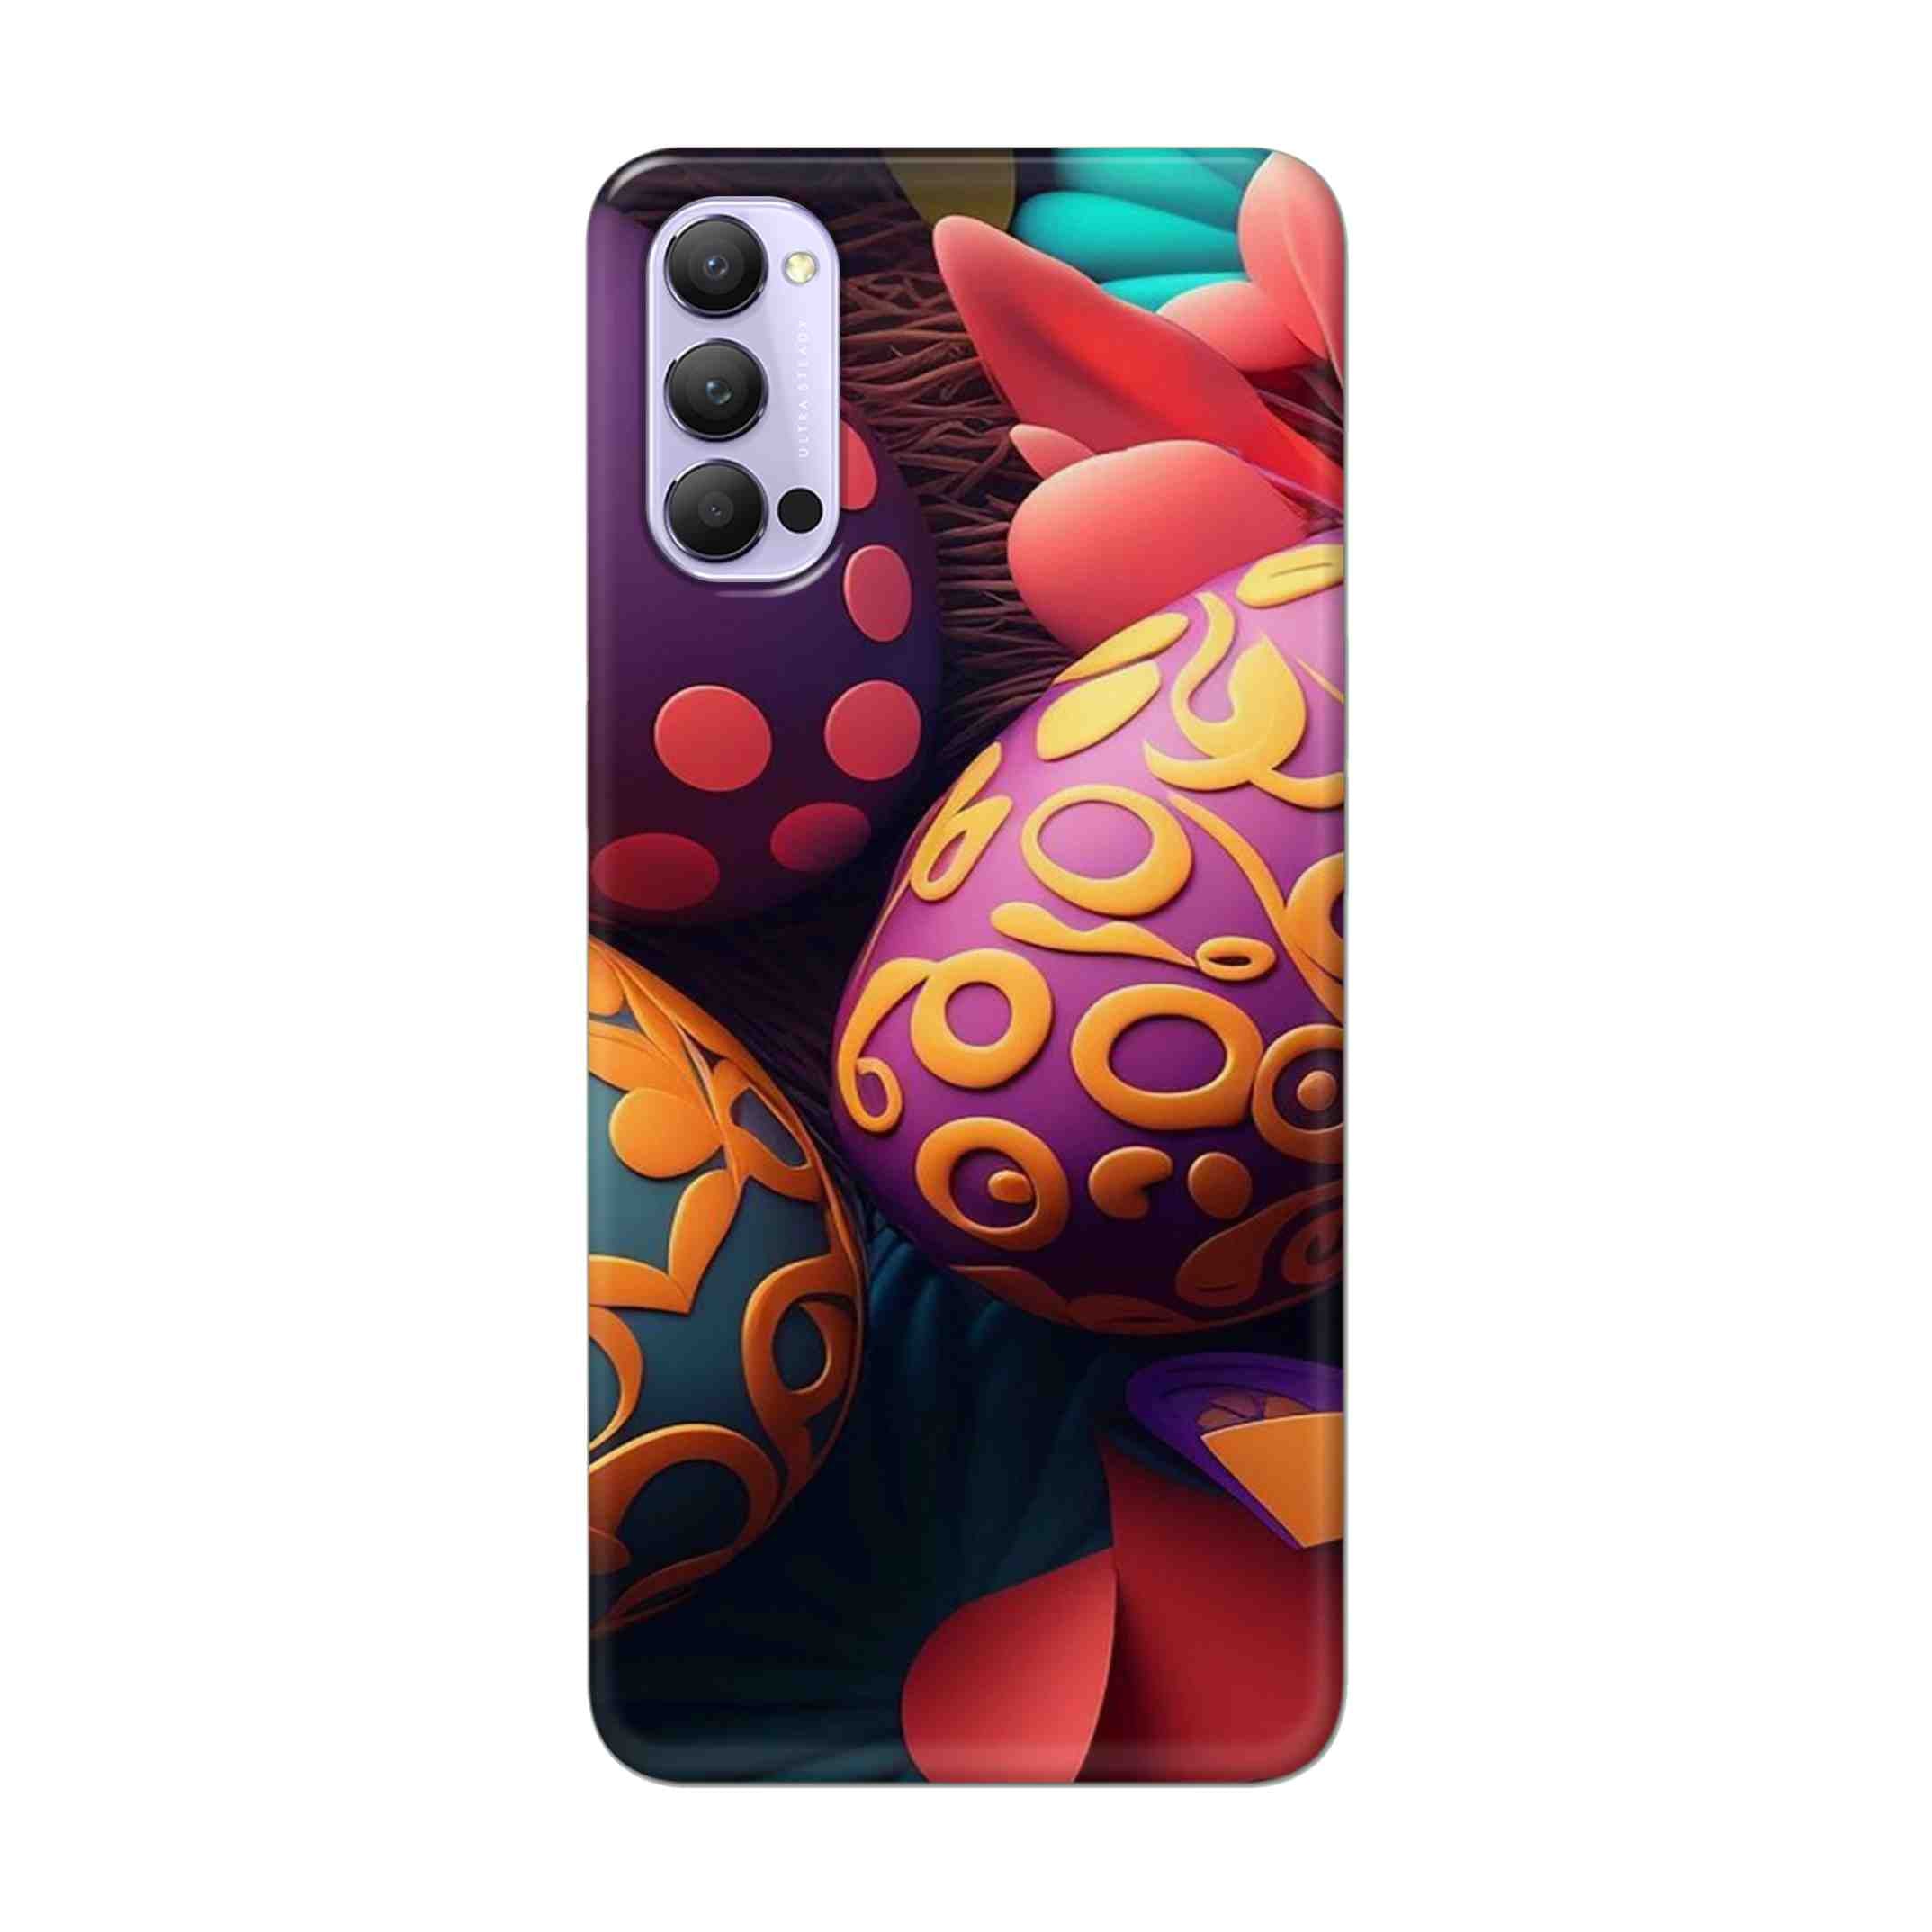 Buy Easter Egg Hard Back Mobile Phone Case Cover For Oppo Reno 4 Pro Online